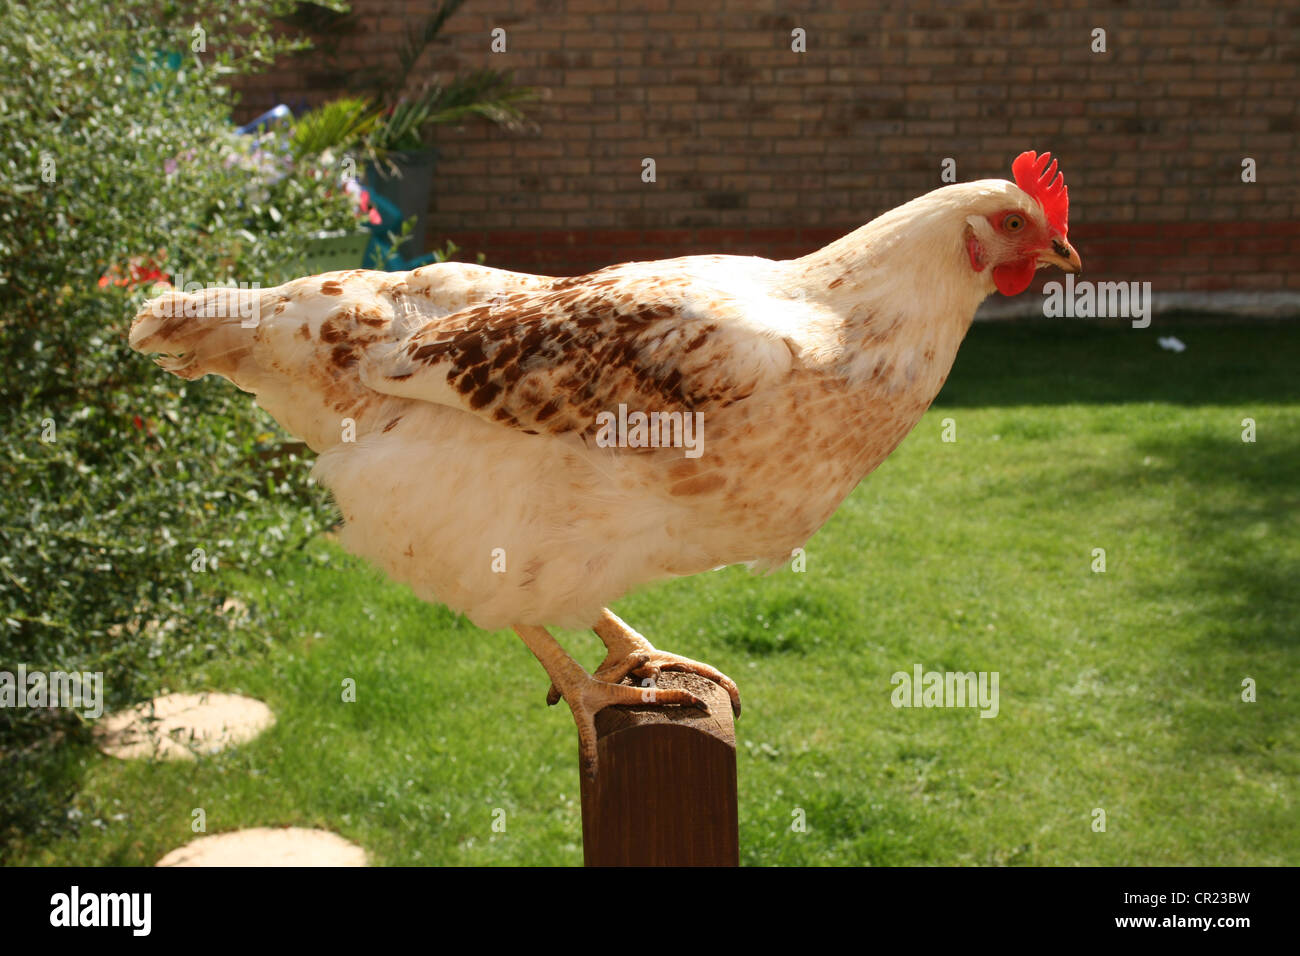 White sussex hybrid chicken Stock Photo